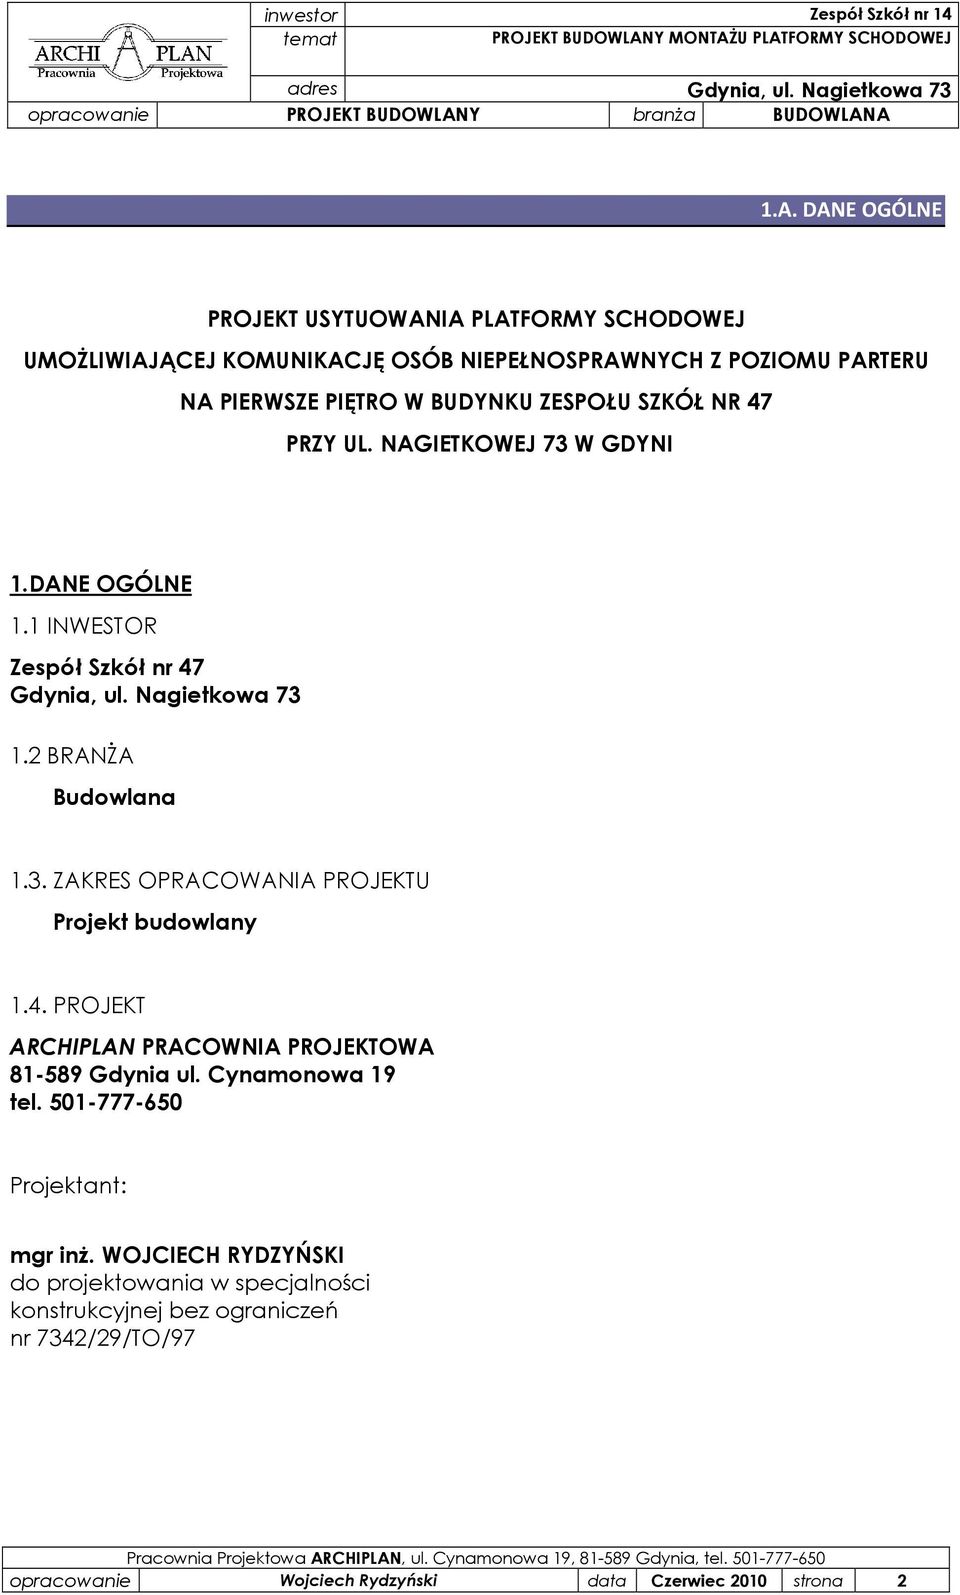 4. PROJEKT ARCHIPLAN PRACOWNIA PROJEKTOWA 81-589 Gdynia ul. Cynamonowa 19 tel. 501-777-650 Projektant: mgr inŝ.